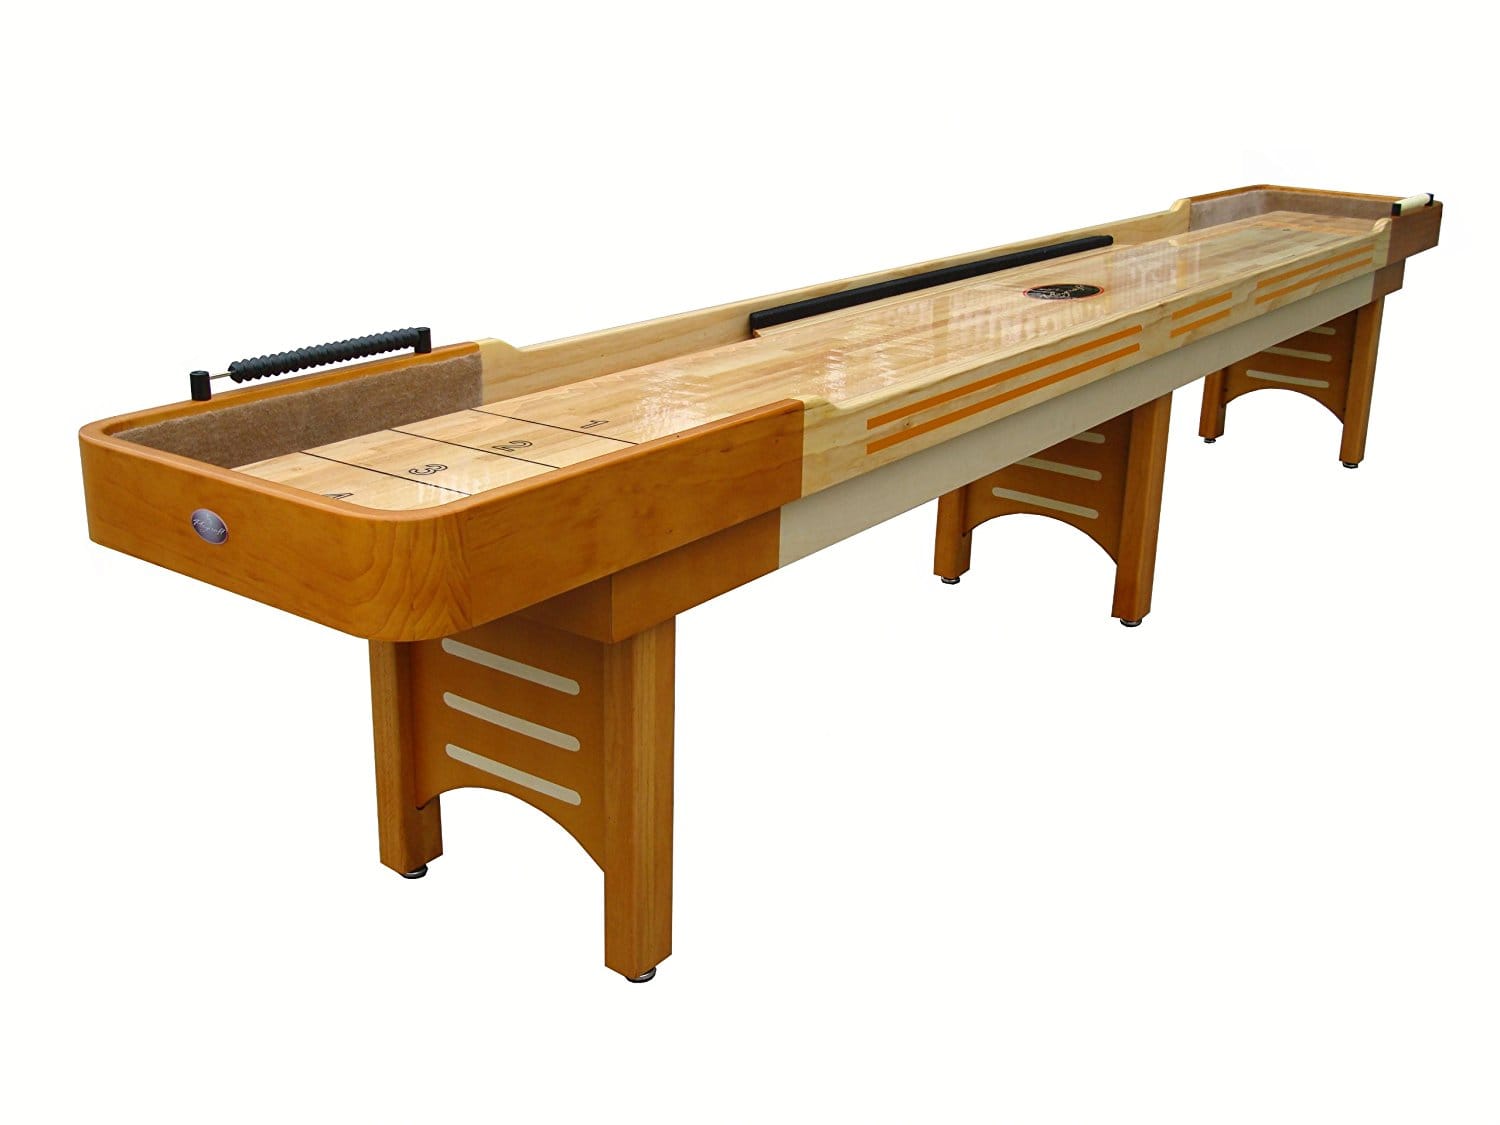 Best Shuffleboard Tables